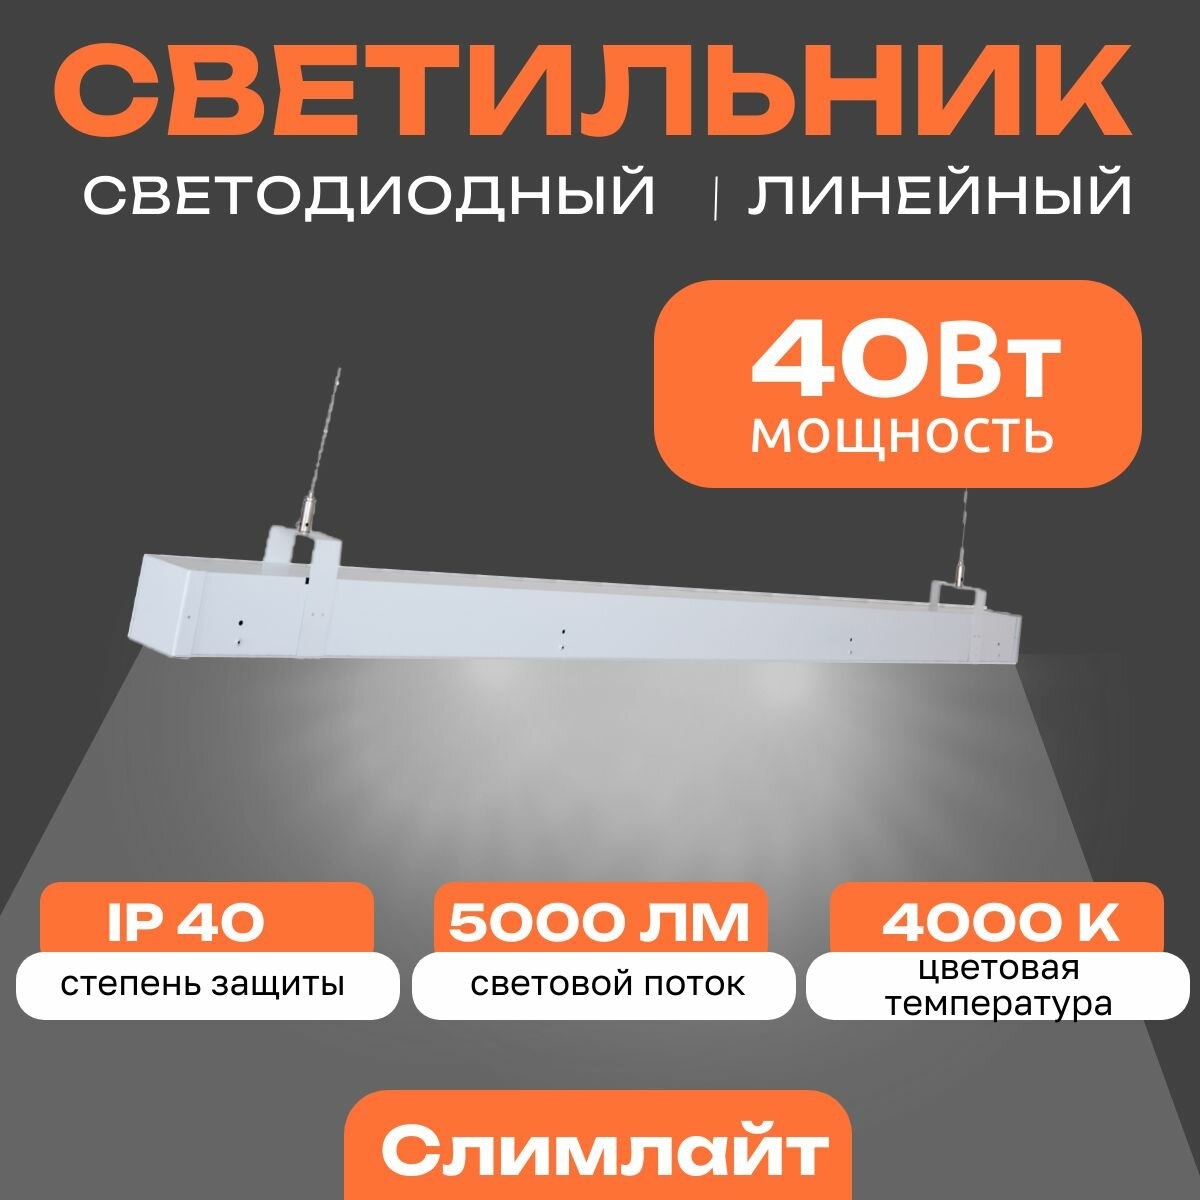 Линейный светодиодный светильник Слимлайт 40 Вт, 5000 Lm, 4000К, IP40, Микропризма